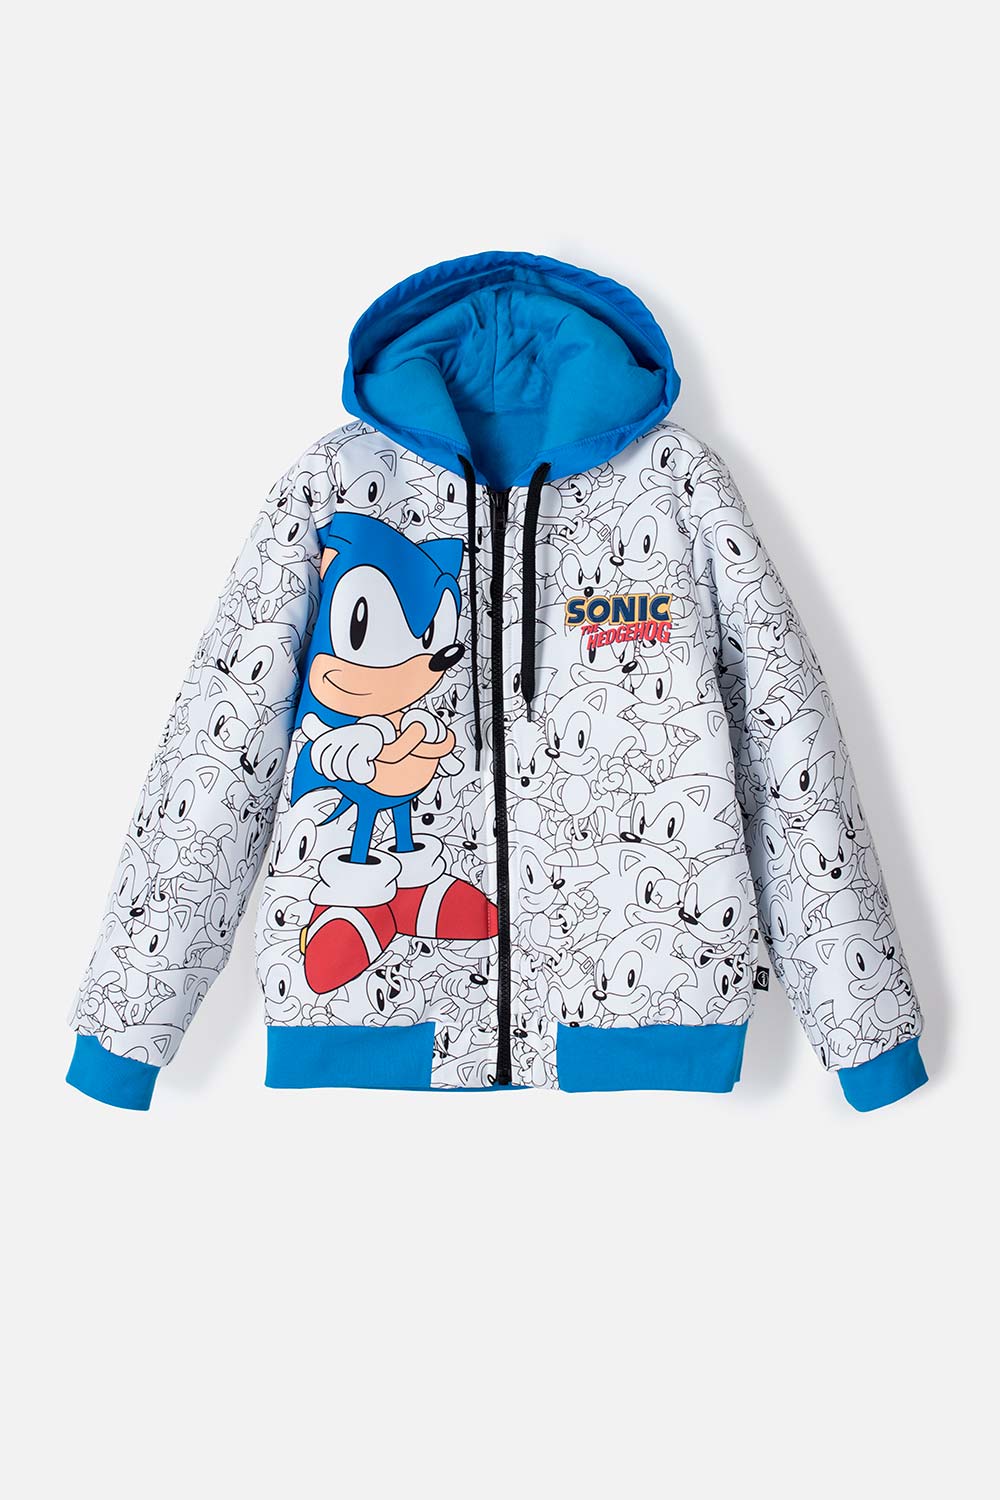 Chaqueta de Sonic con capucha azul y blanca para niño